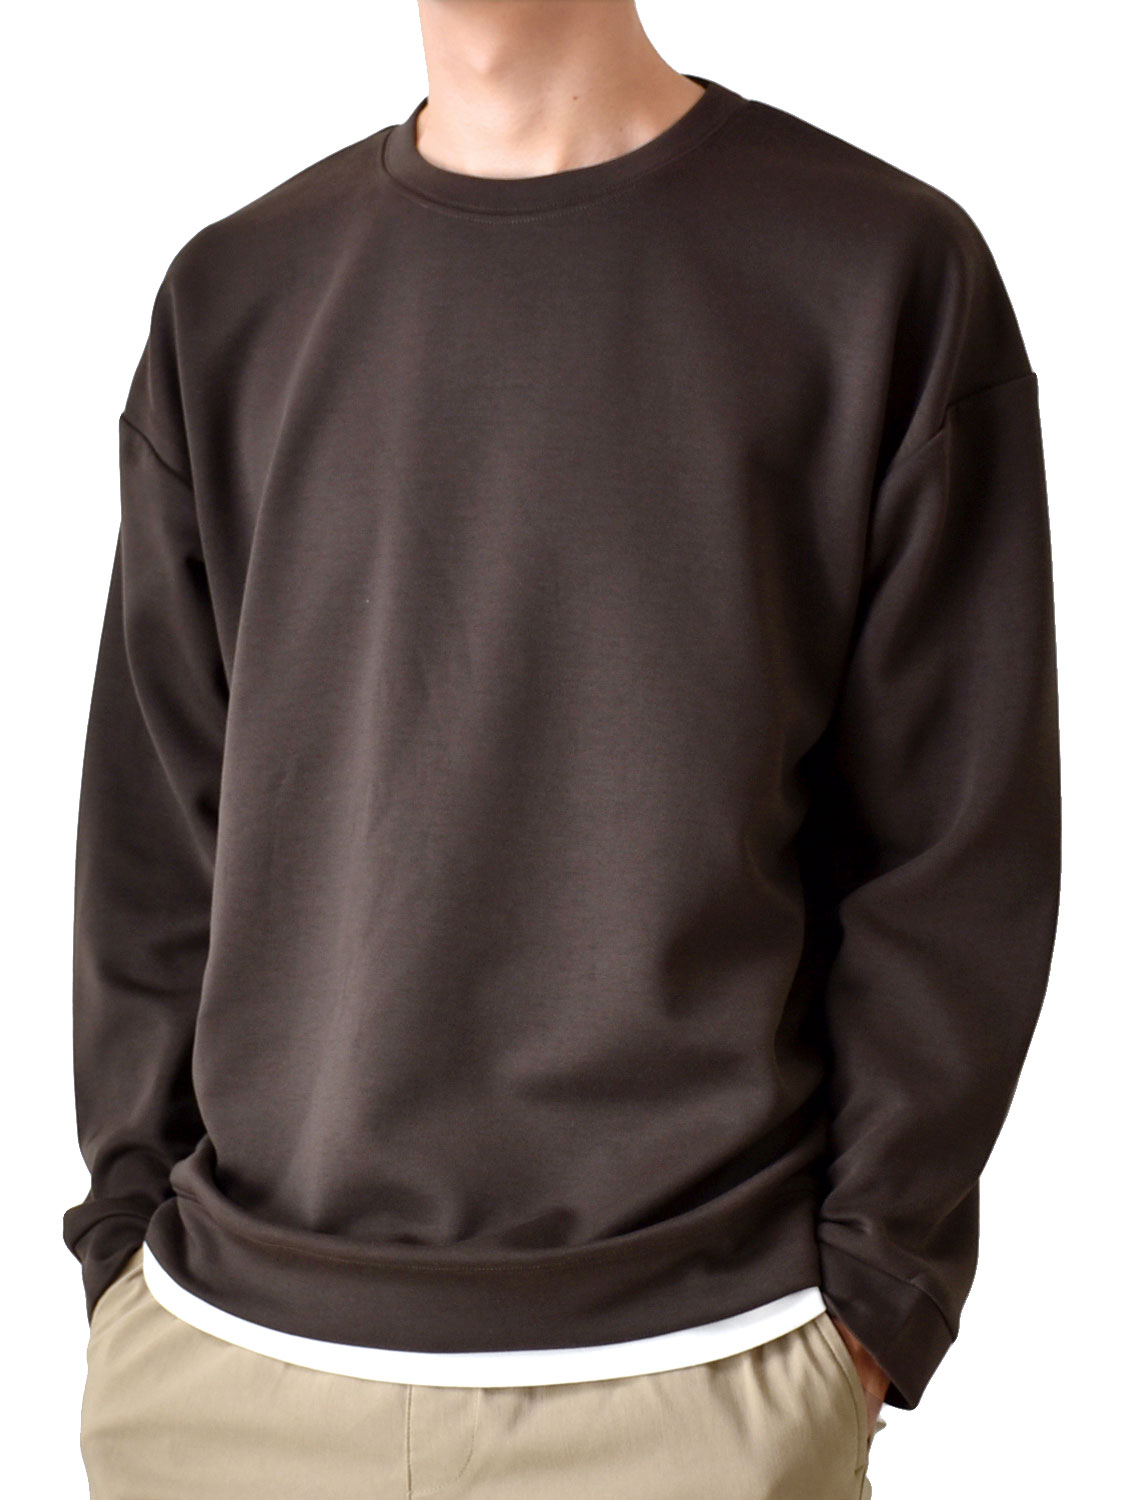 Tシャツ カットソー メンズ ストレッチ 重ね着風 スマホポケット クルーネック 送料無料 通販YC